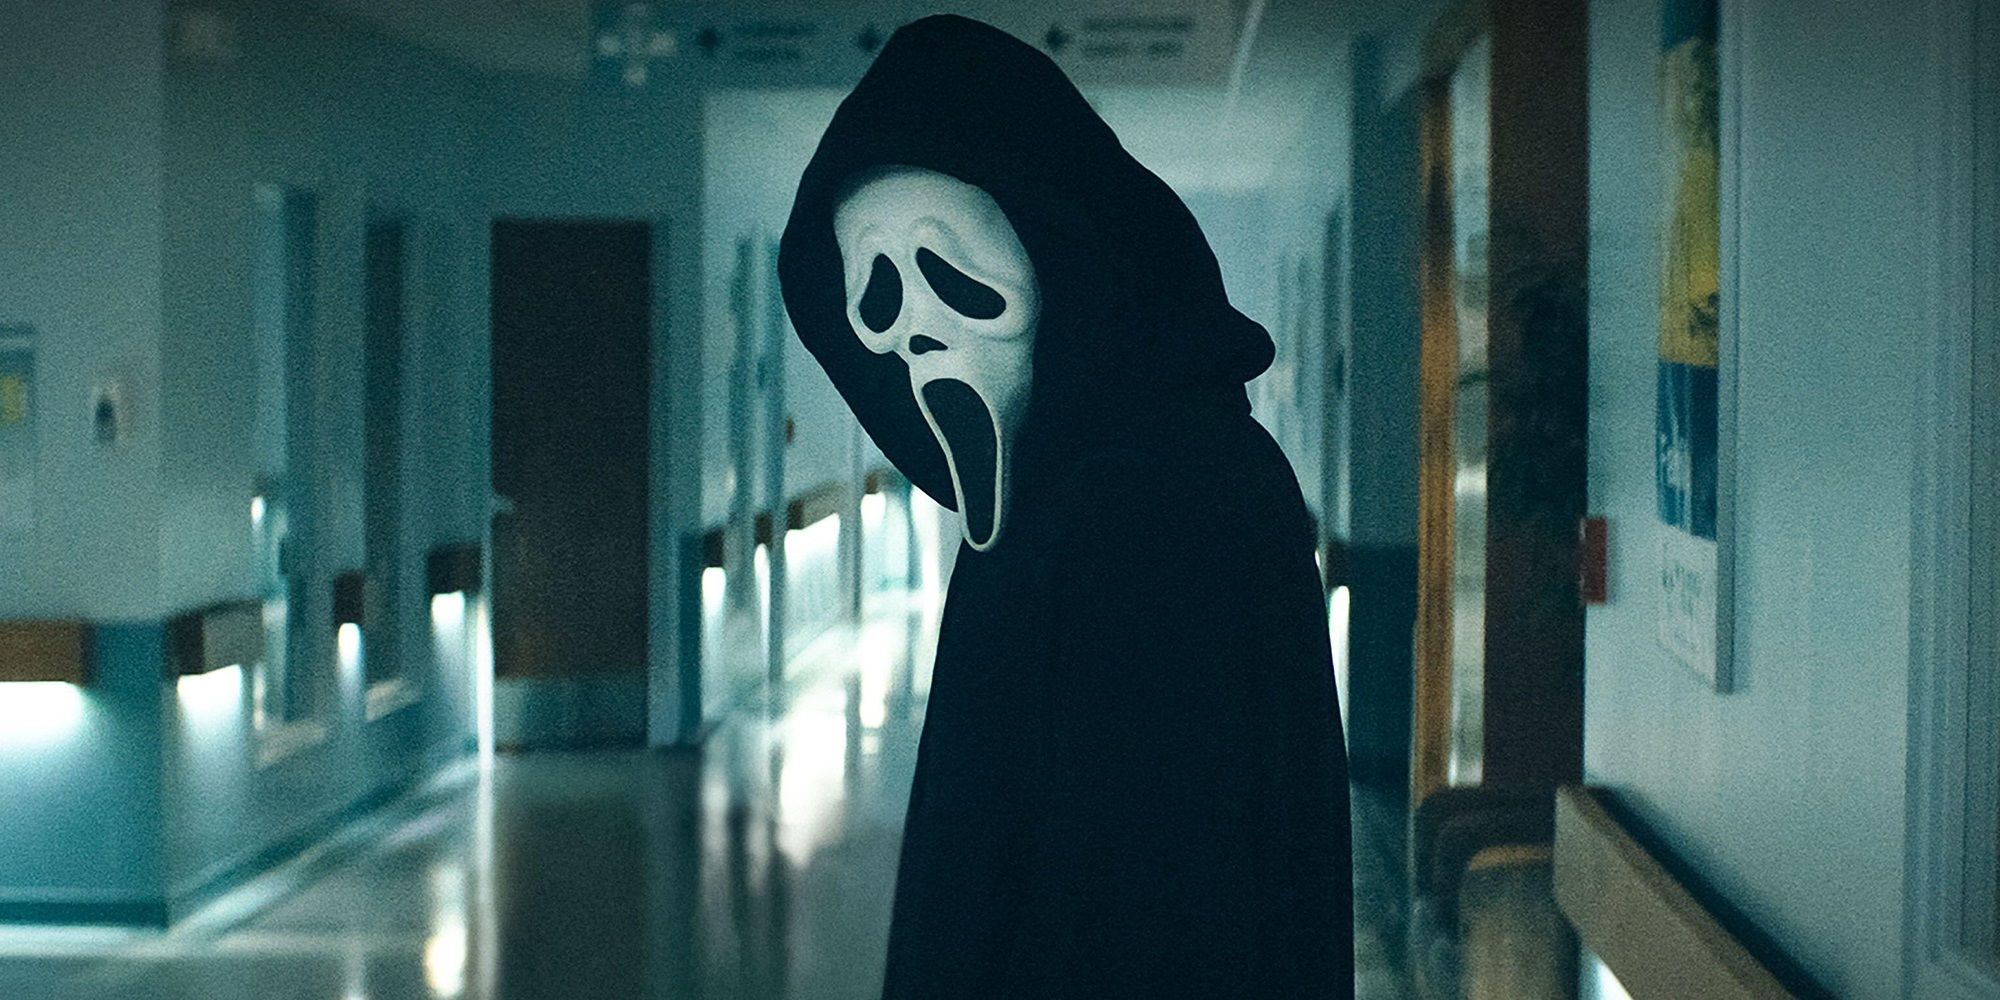 The Ghostface killer in a hospital in Scream 2022